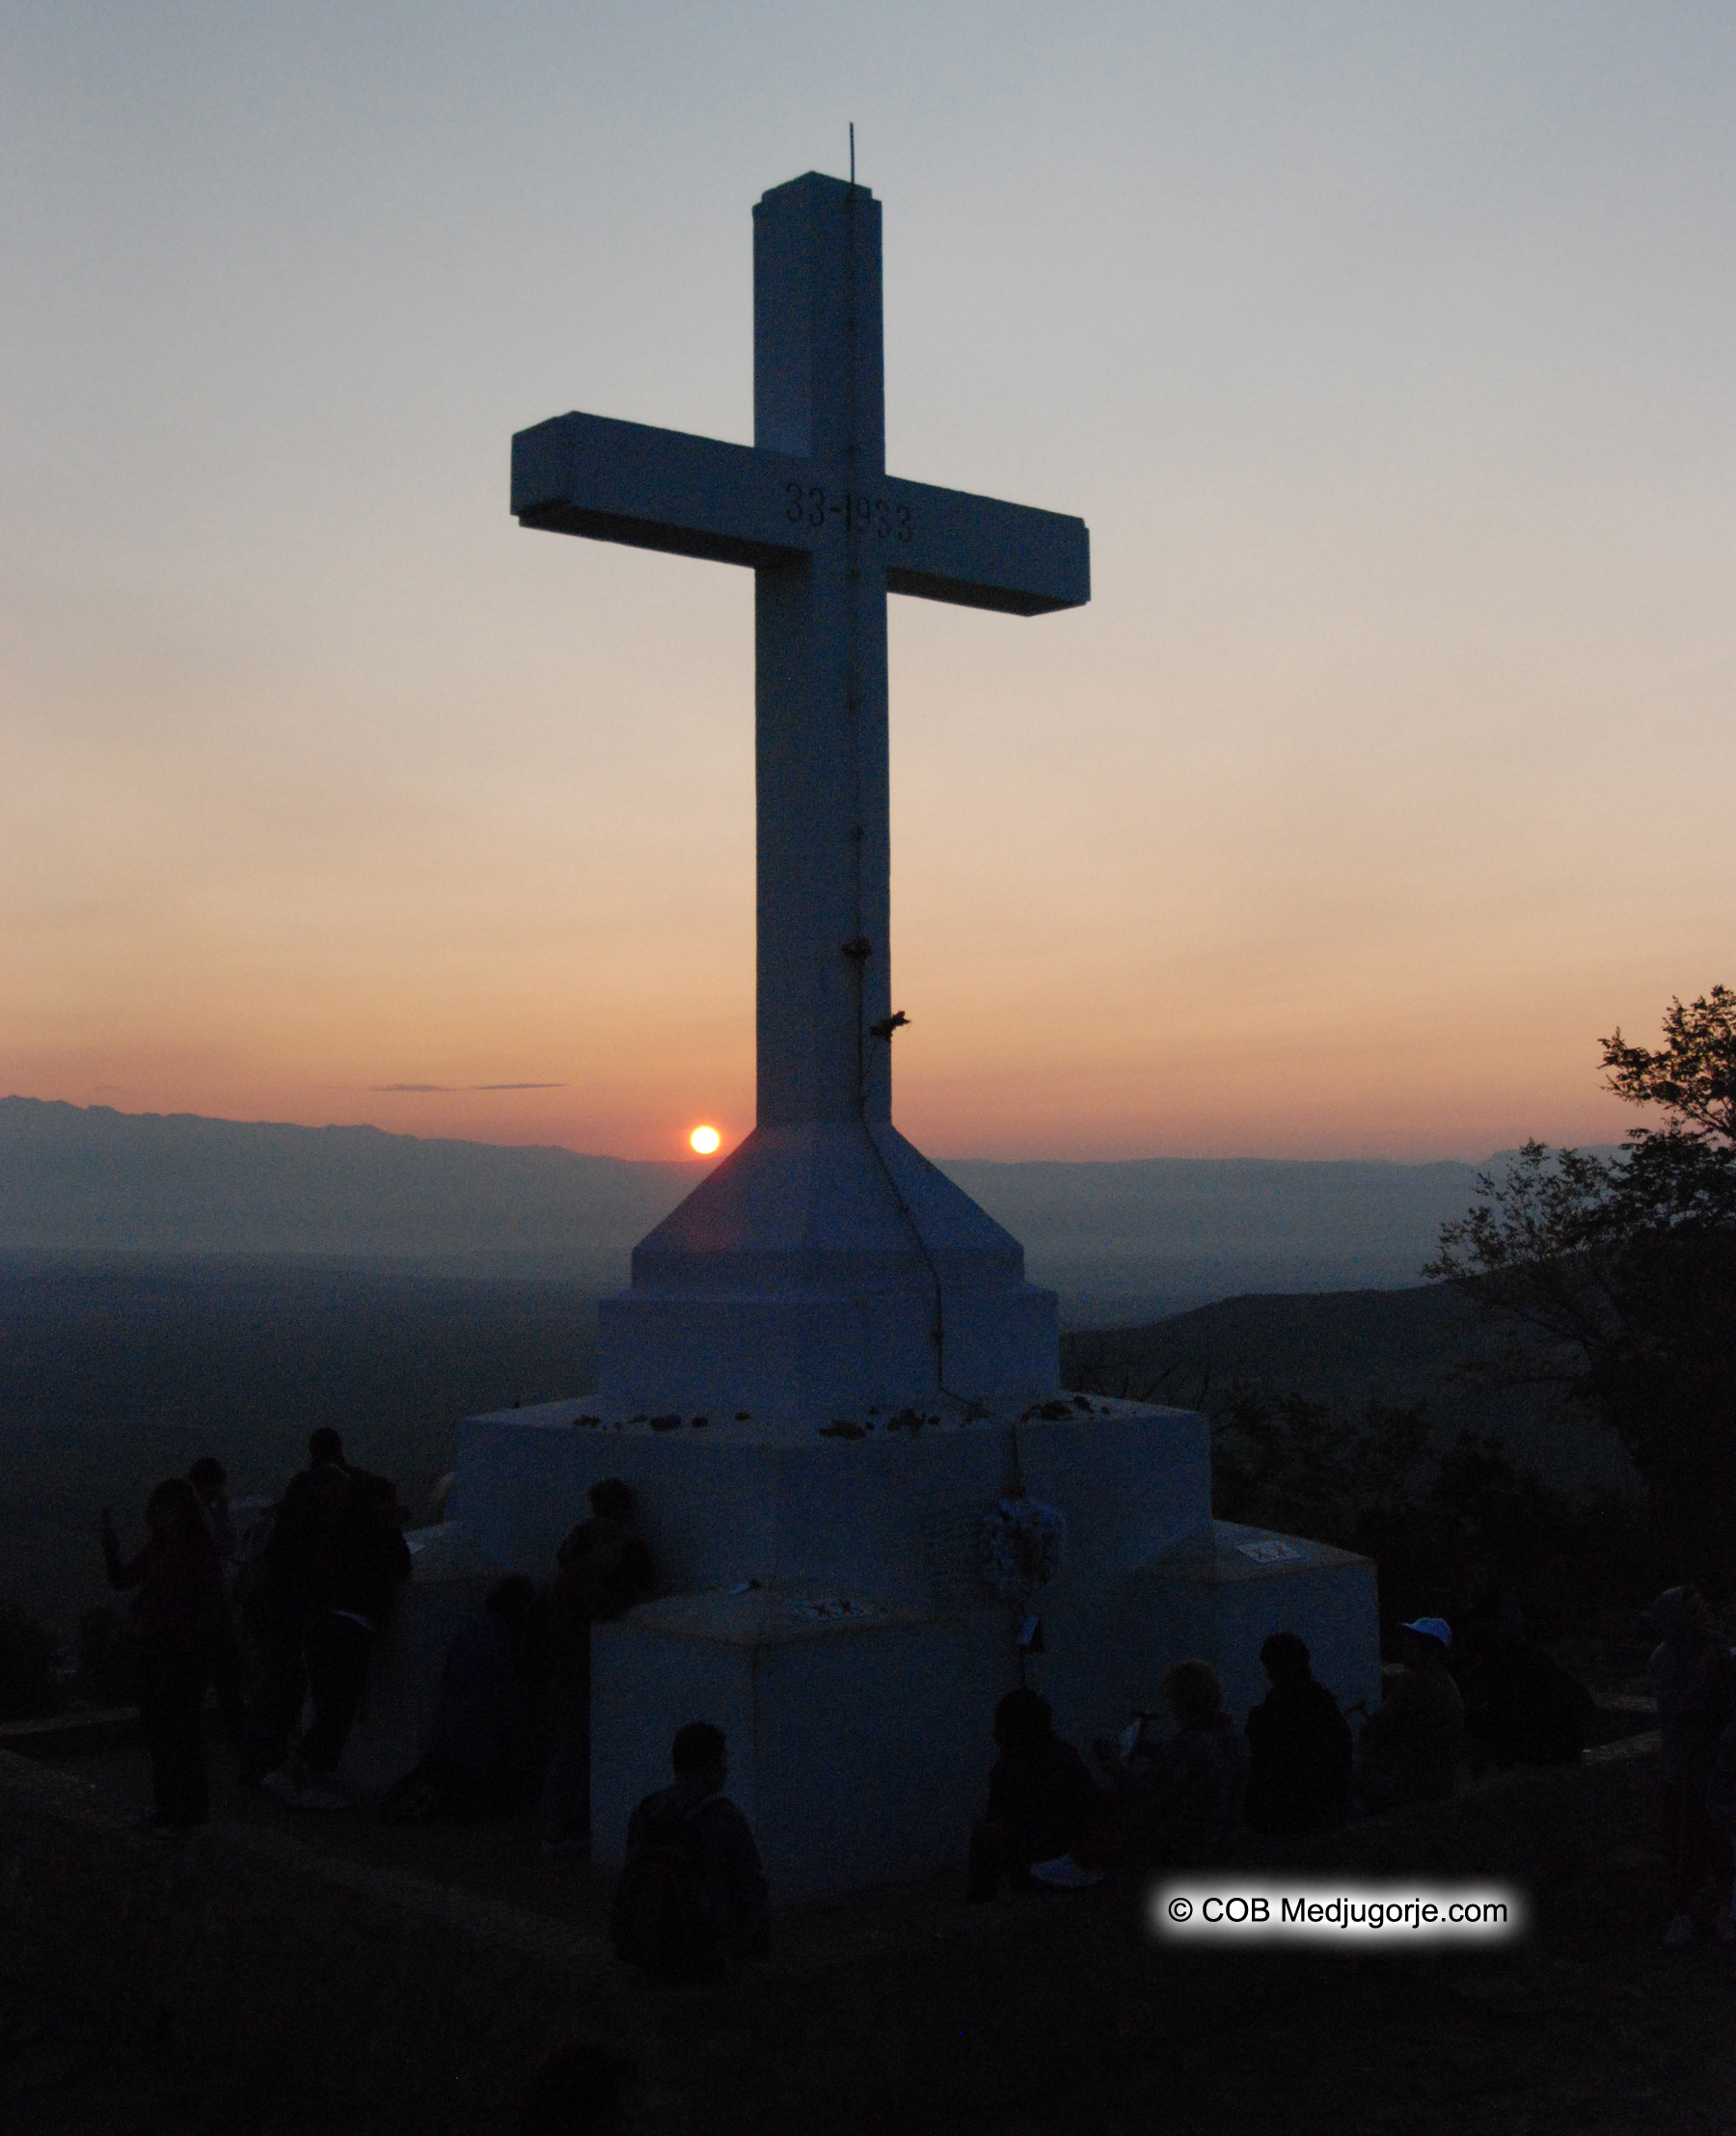 Sunset on Cross Mountain in Medjugorje